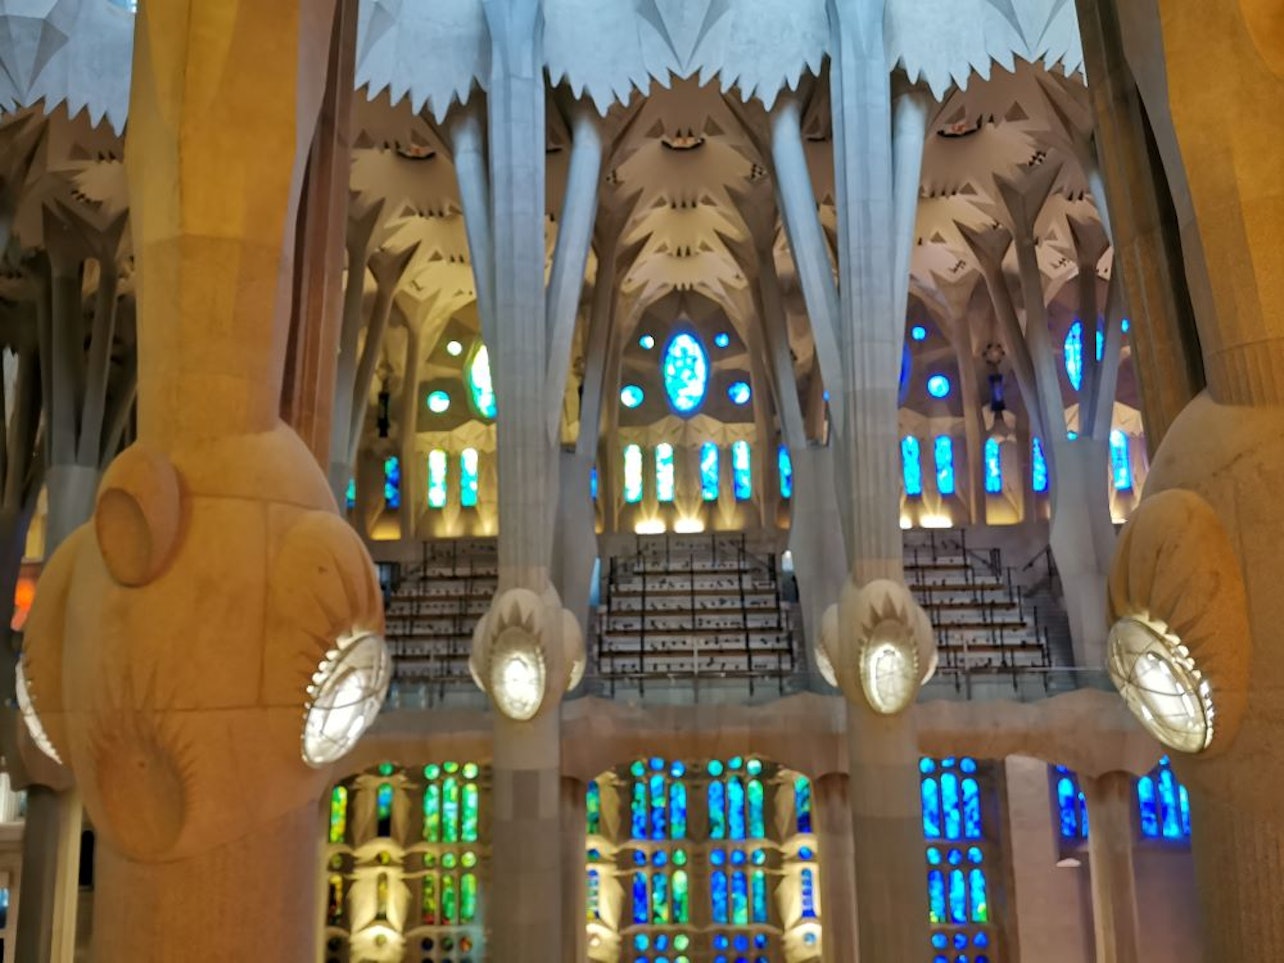 Go With A Local: Passeio sem fila pela Sagrada Família em espanhol - Acomodações em Barcelona